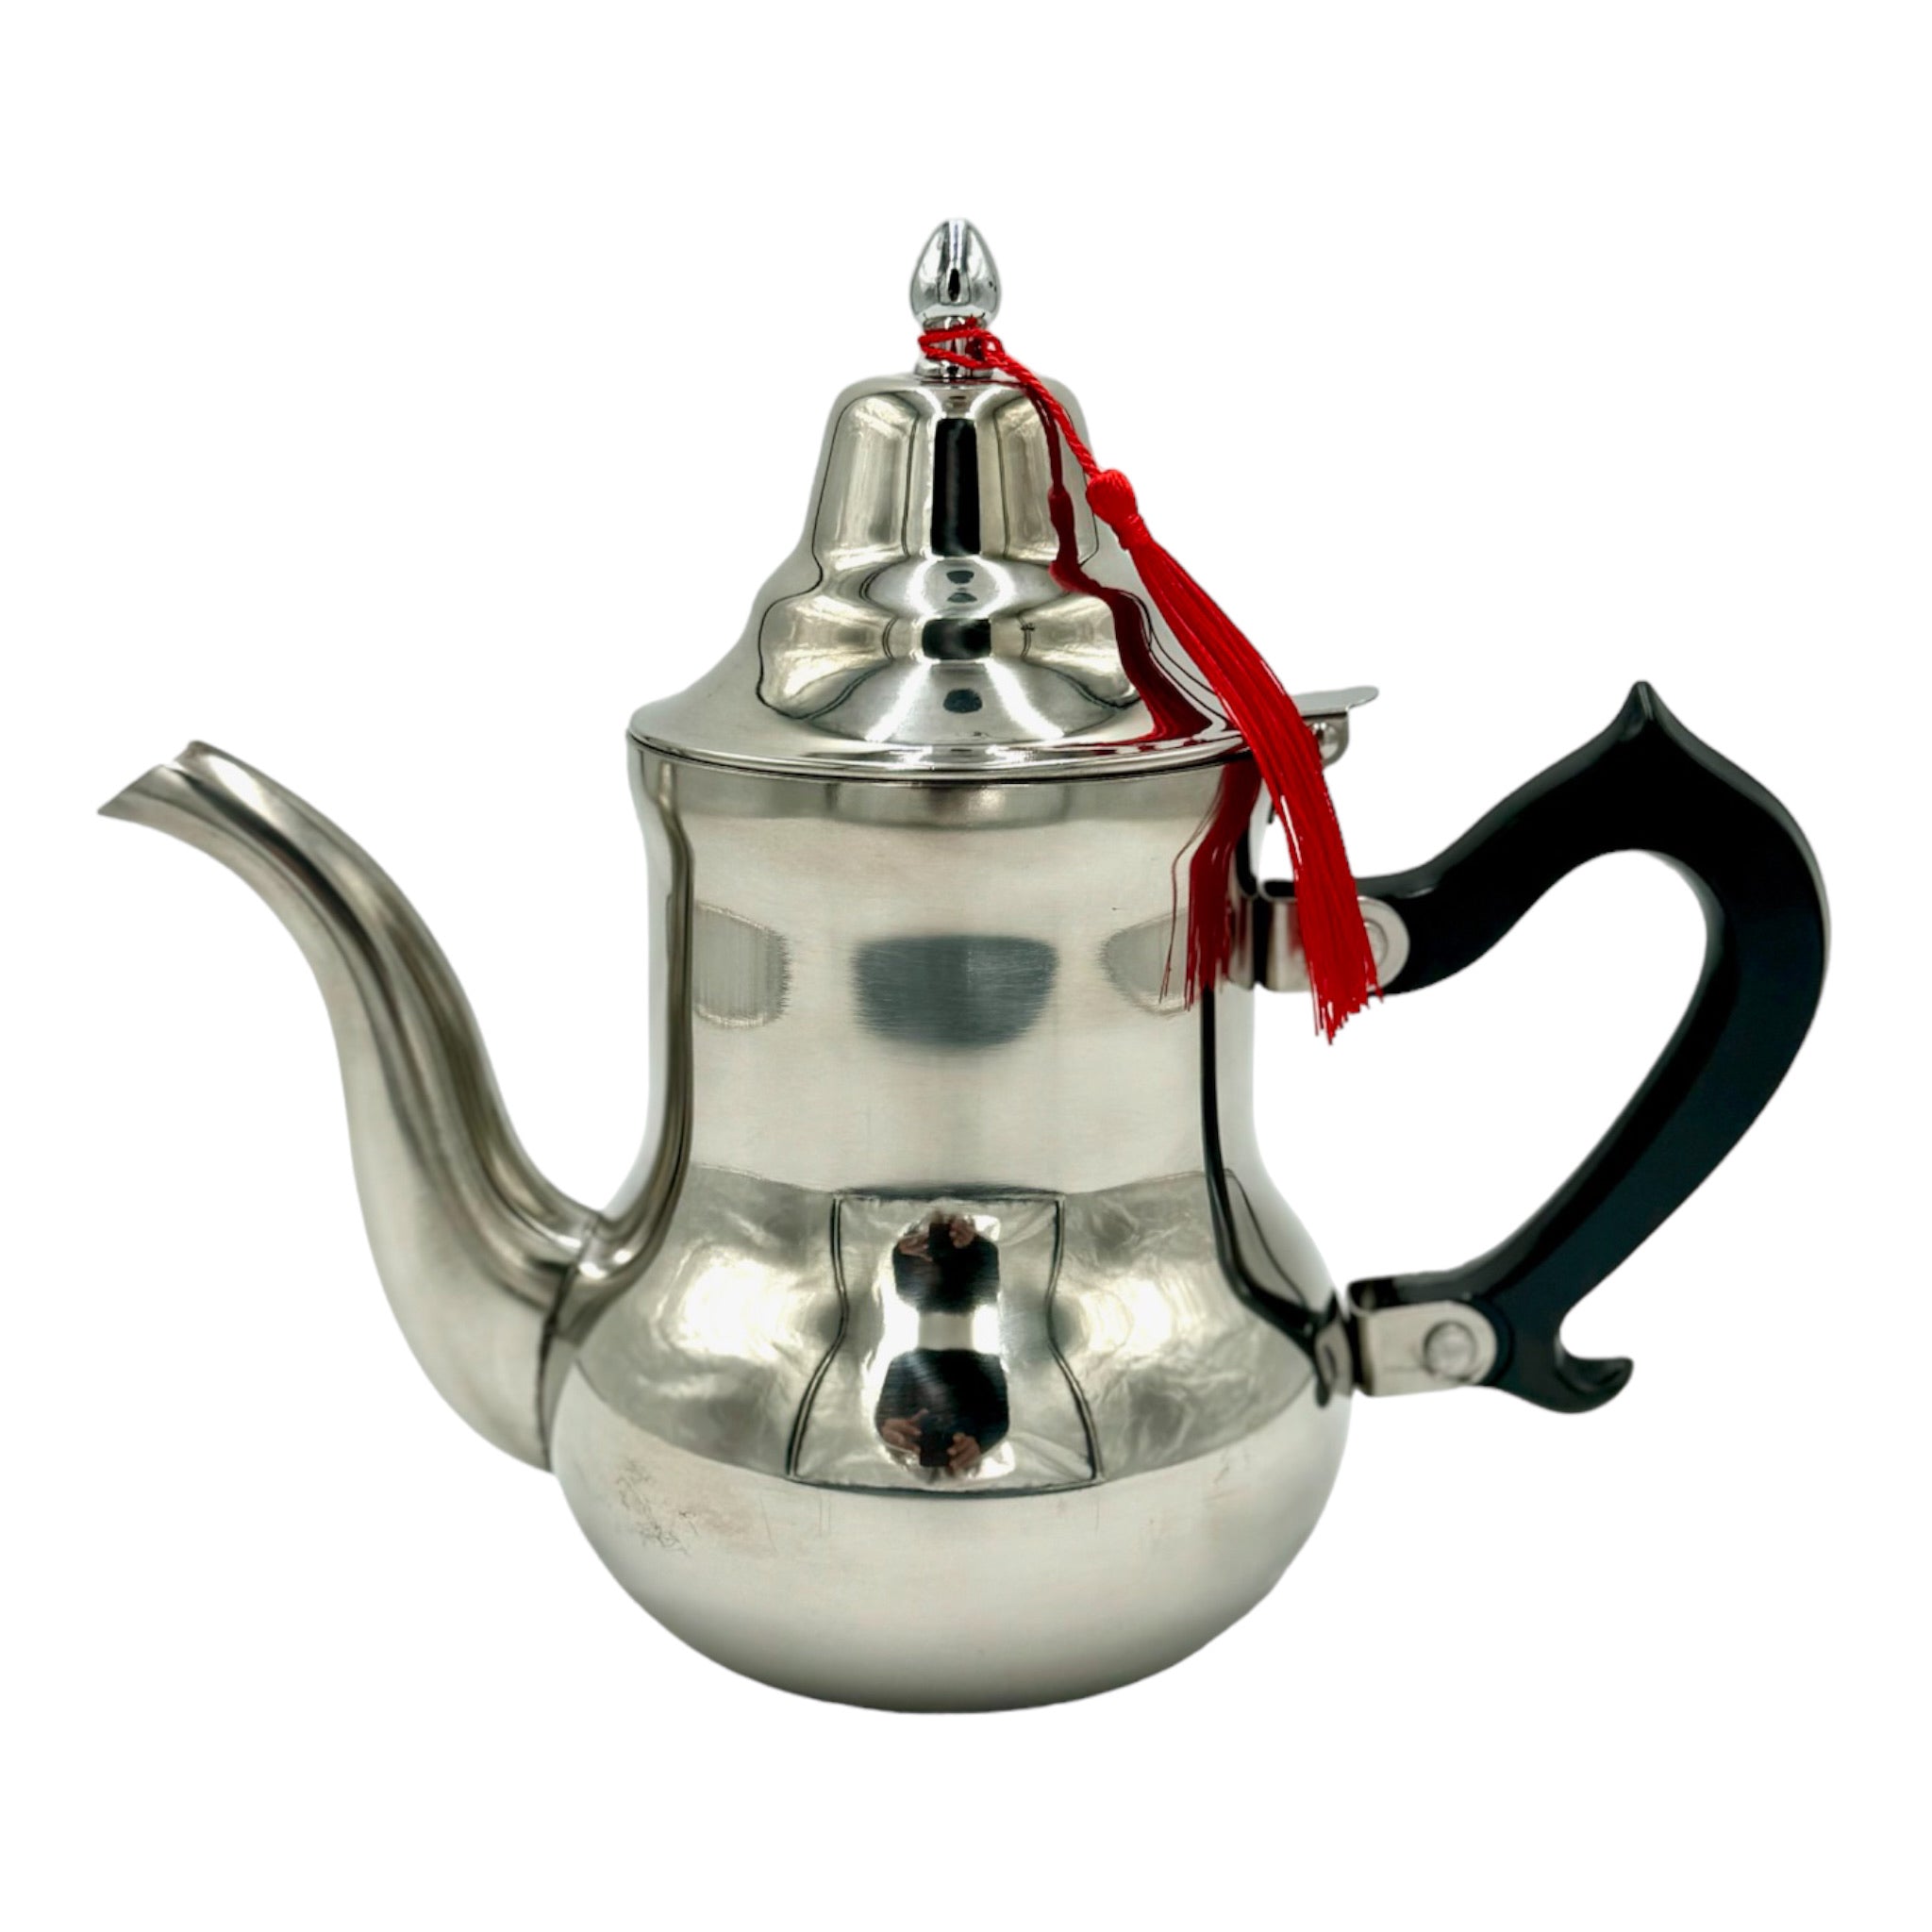 Moroccan Tea Pot By Mazyana Brand